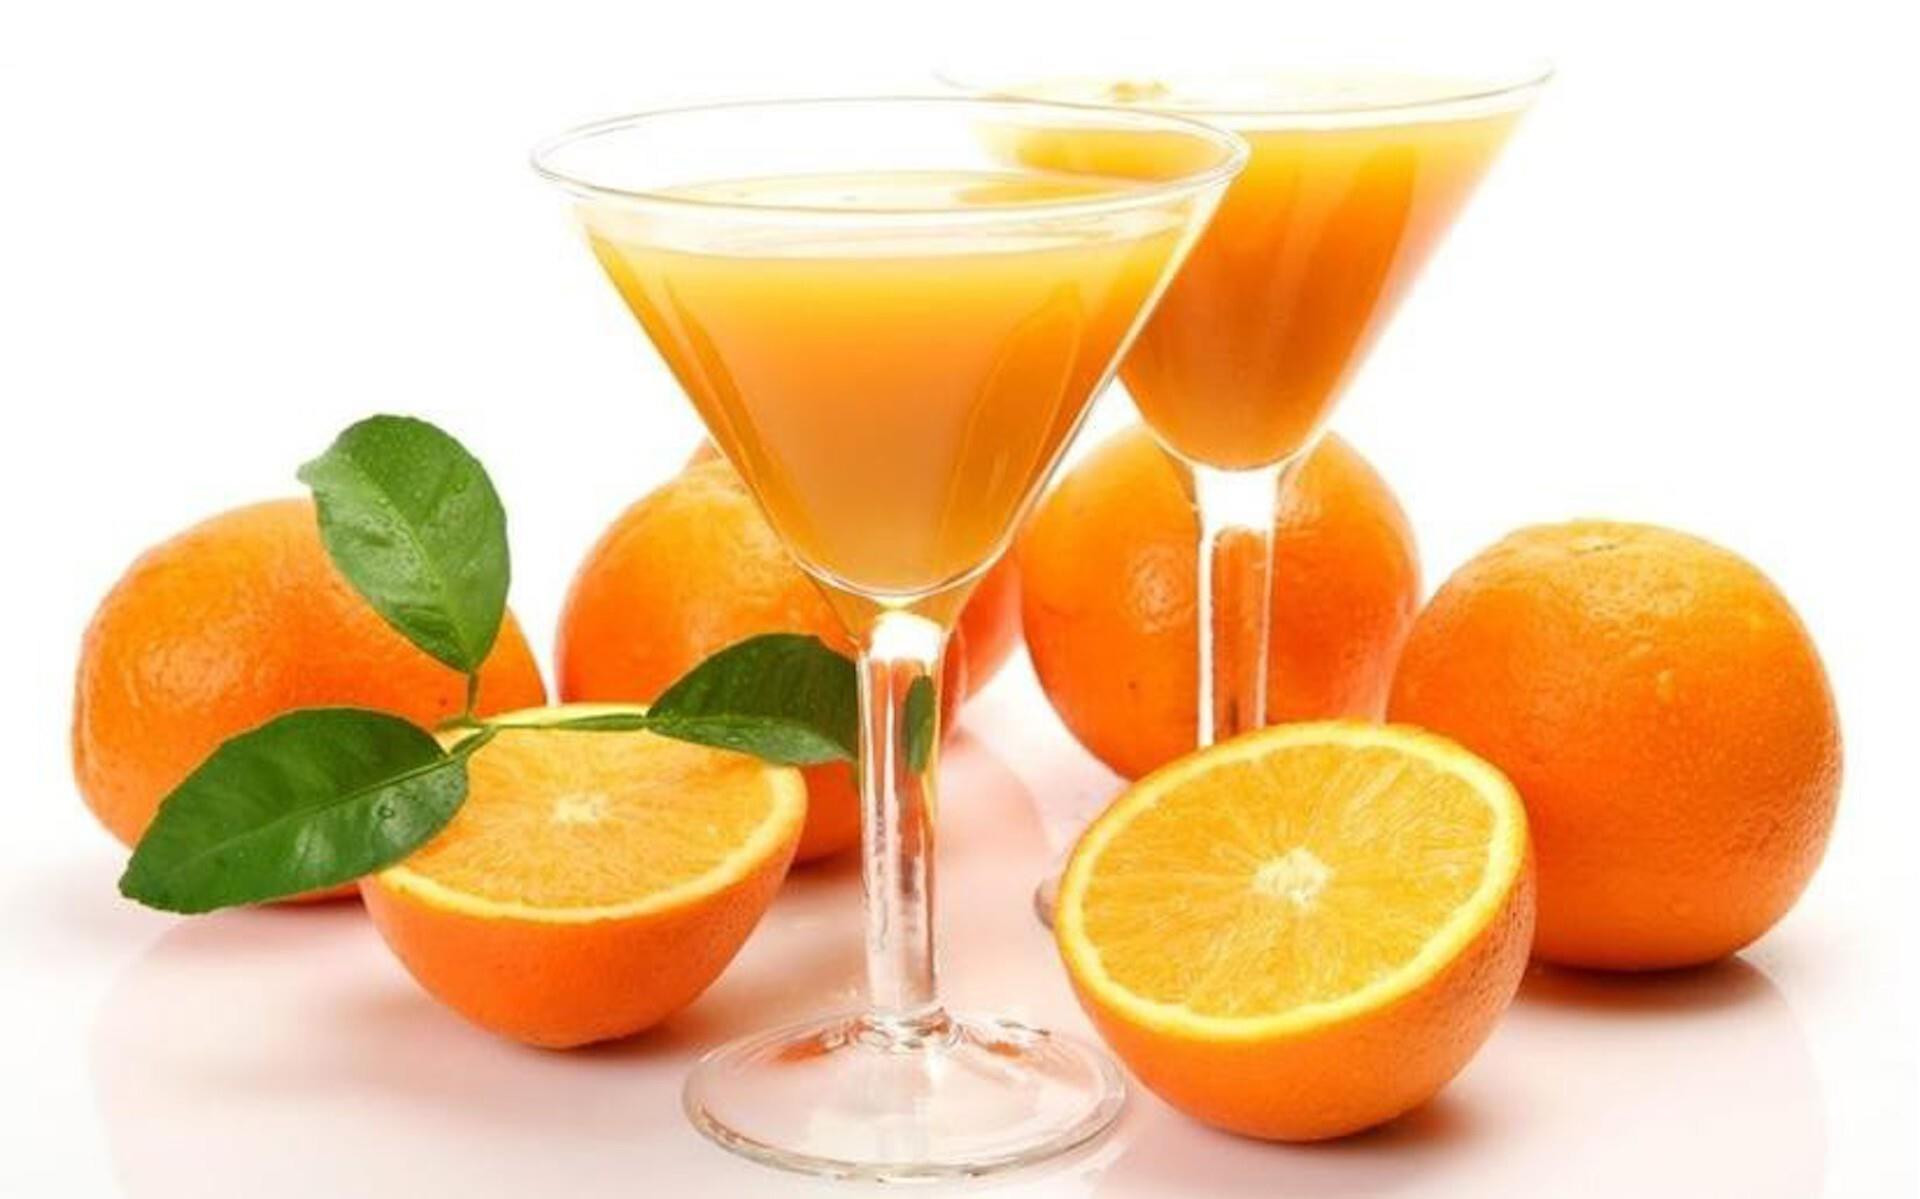 Uống nước cam sai cách có thể gây nguy hiểm - 1